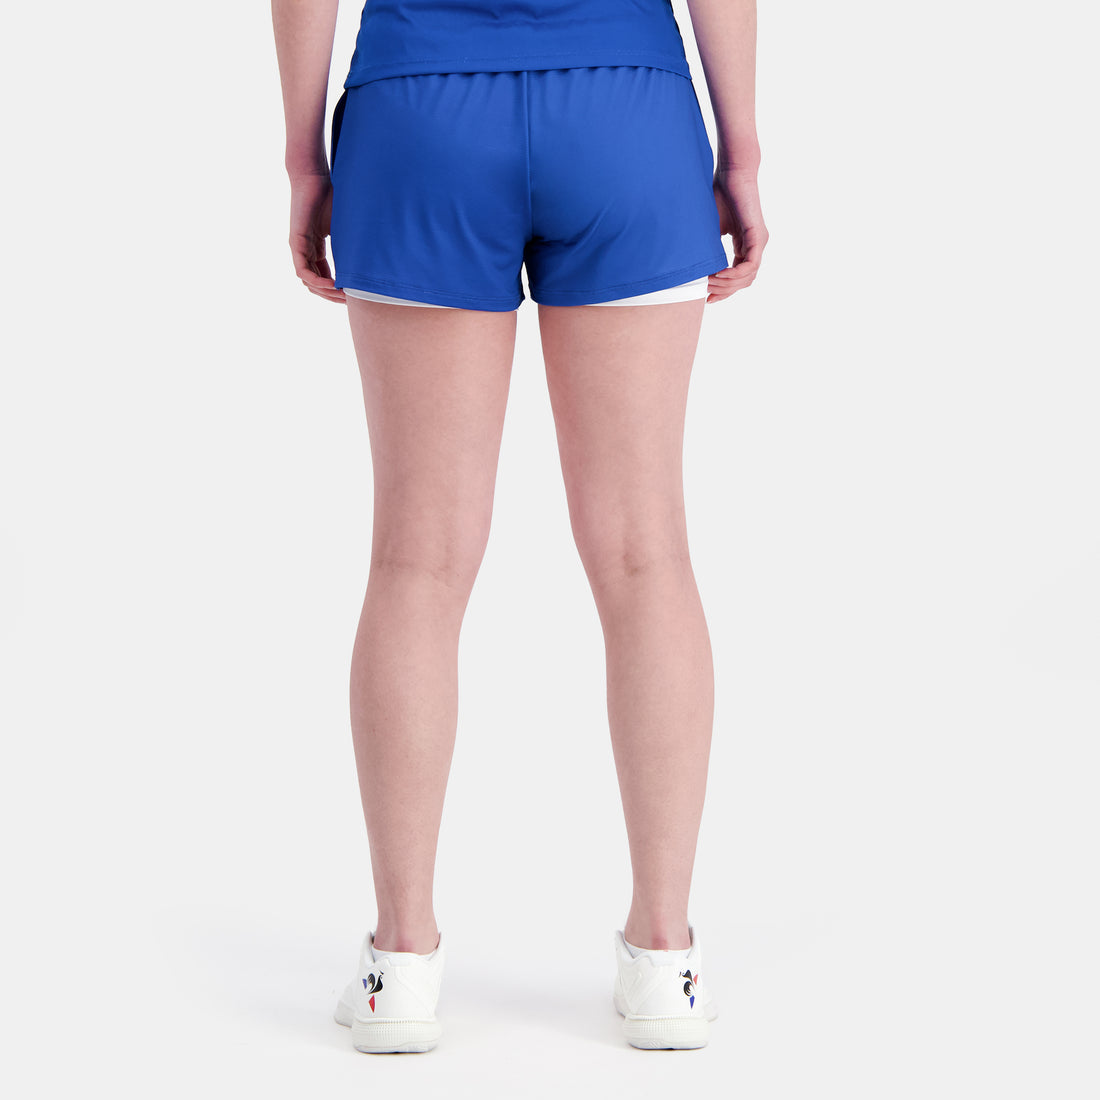 2410526-TENNIS PRO Short 24 N°2 W lapis blue/n.o  | Pantalones Cortos Mujer